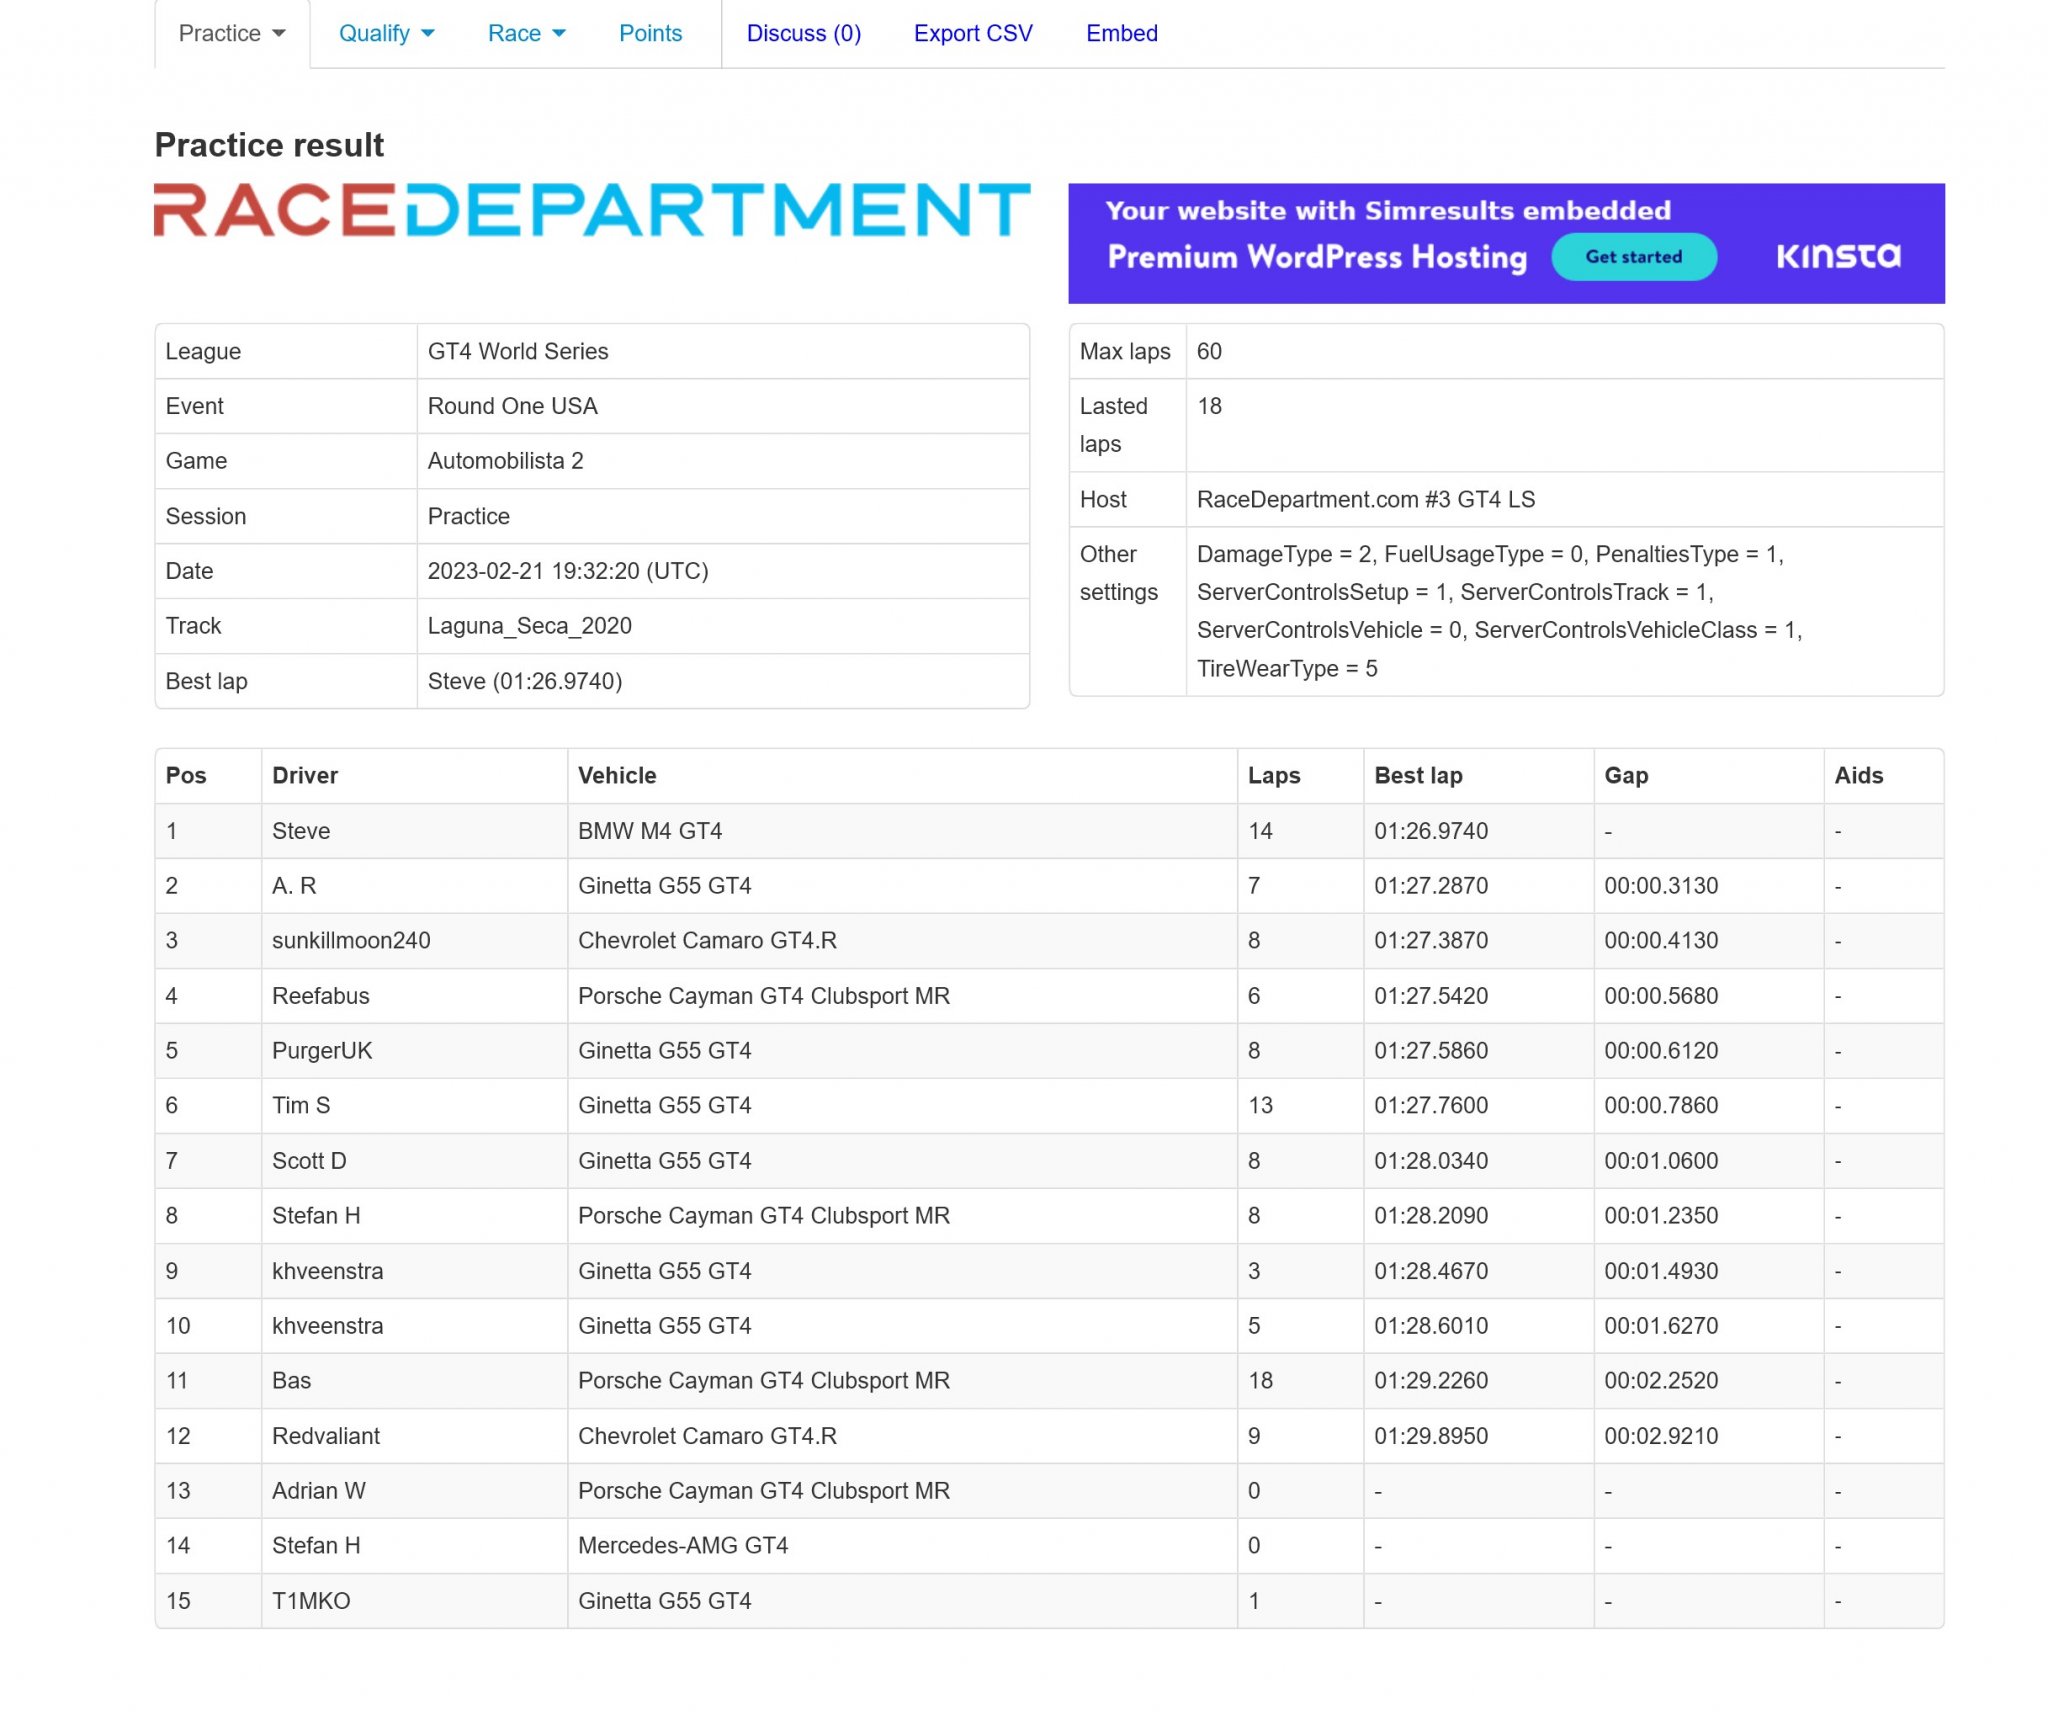 Screenshot 2023-02-22 at 00-19-51 Result 230222-Yy1 - Laguna_Seca_2020 - RaceDepartment.com #3...jpg